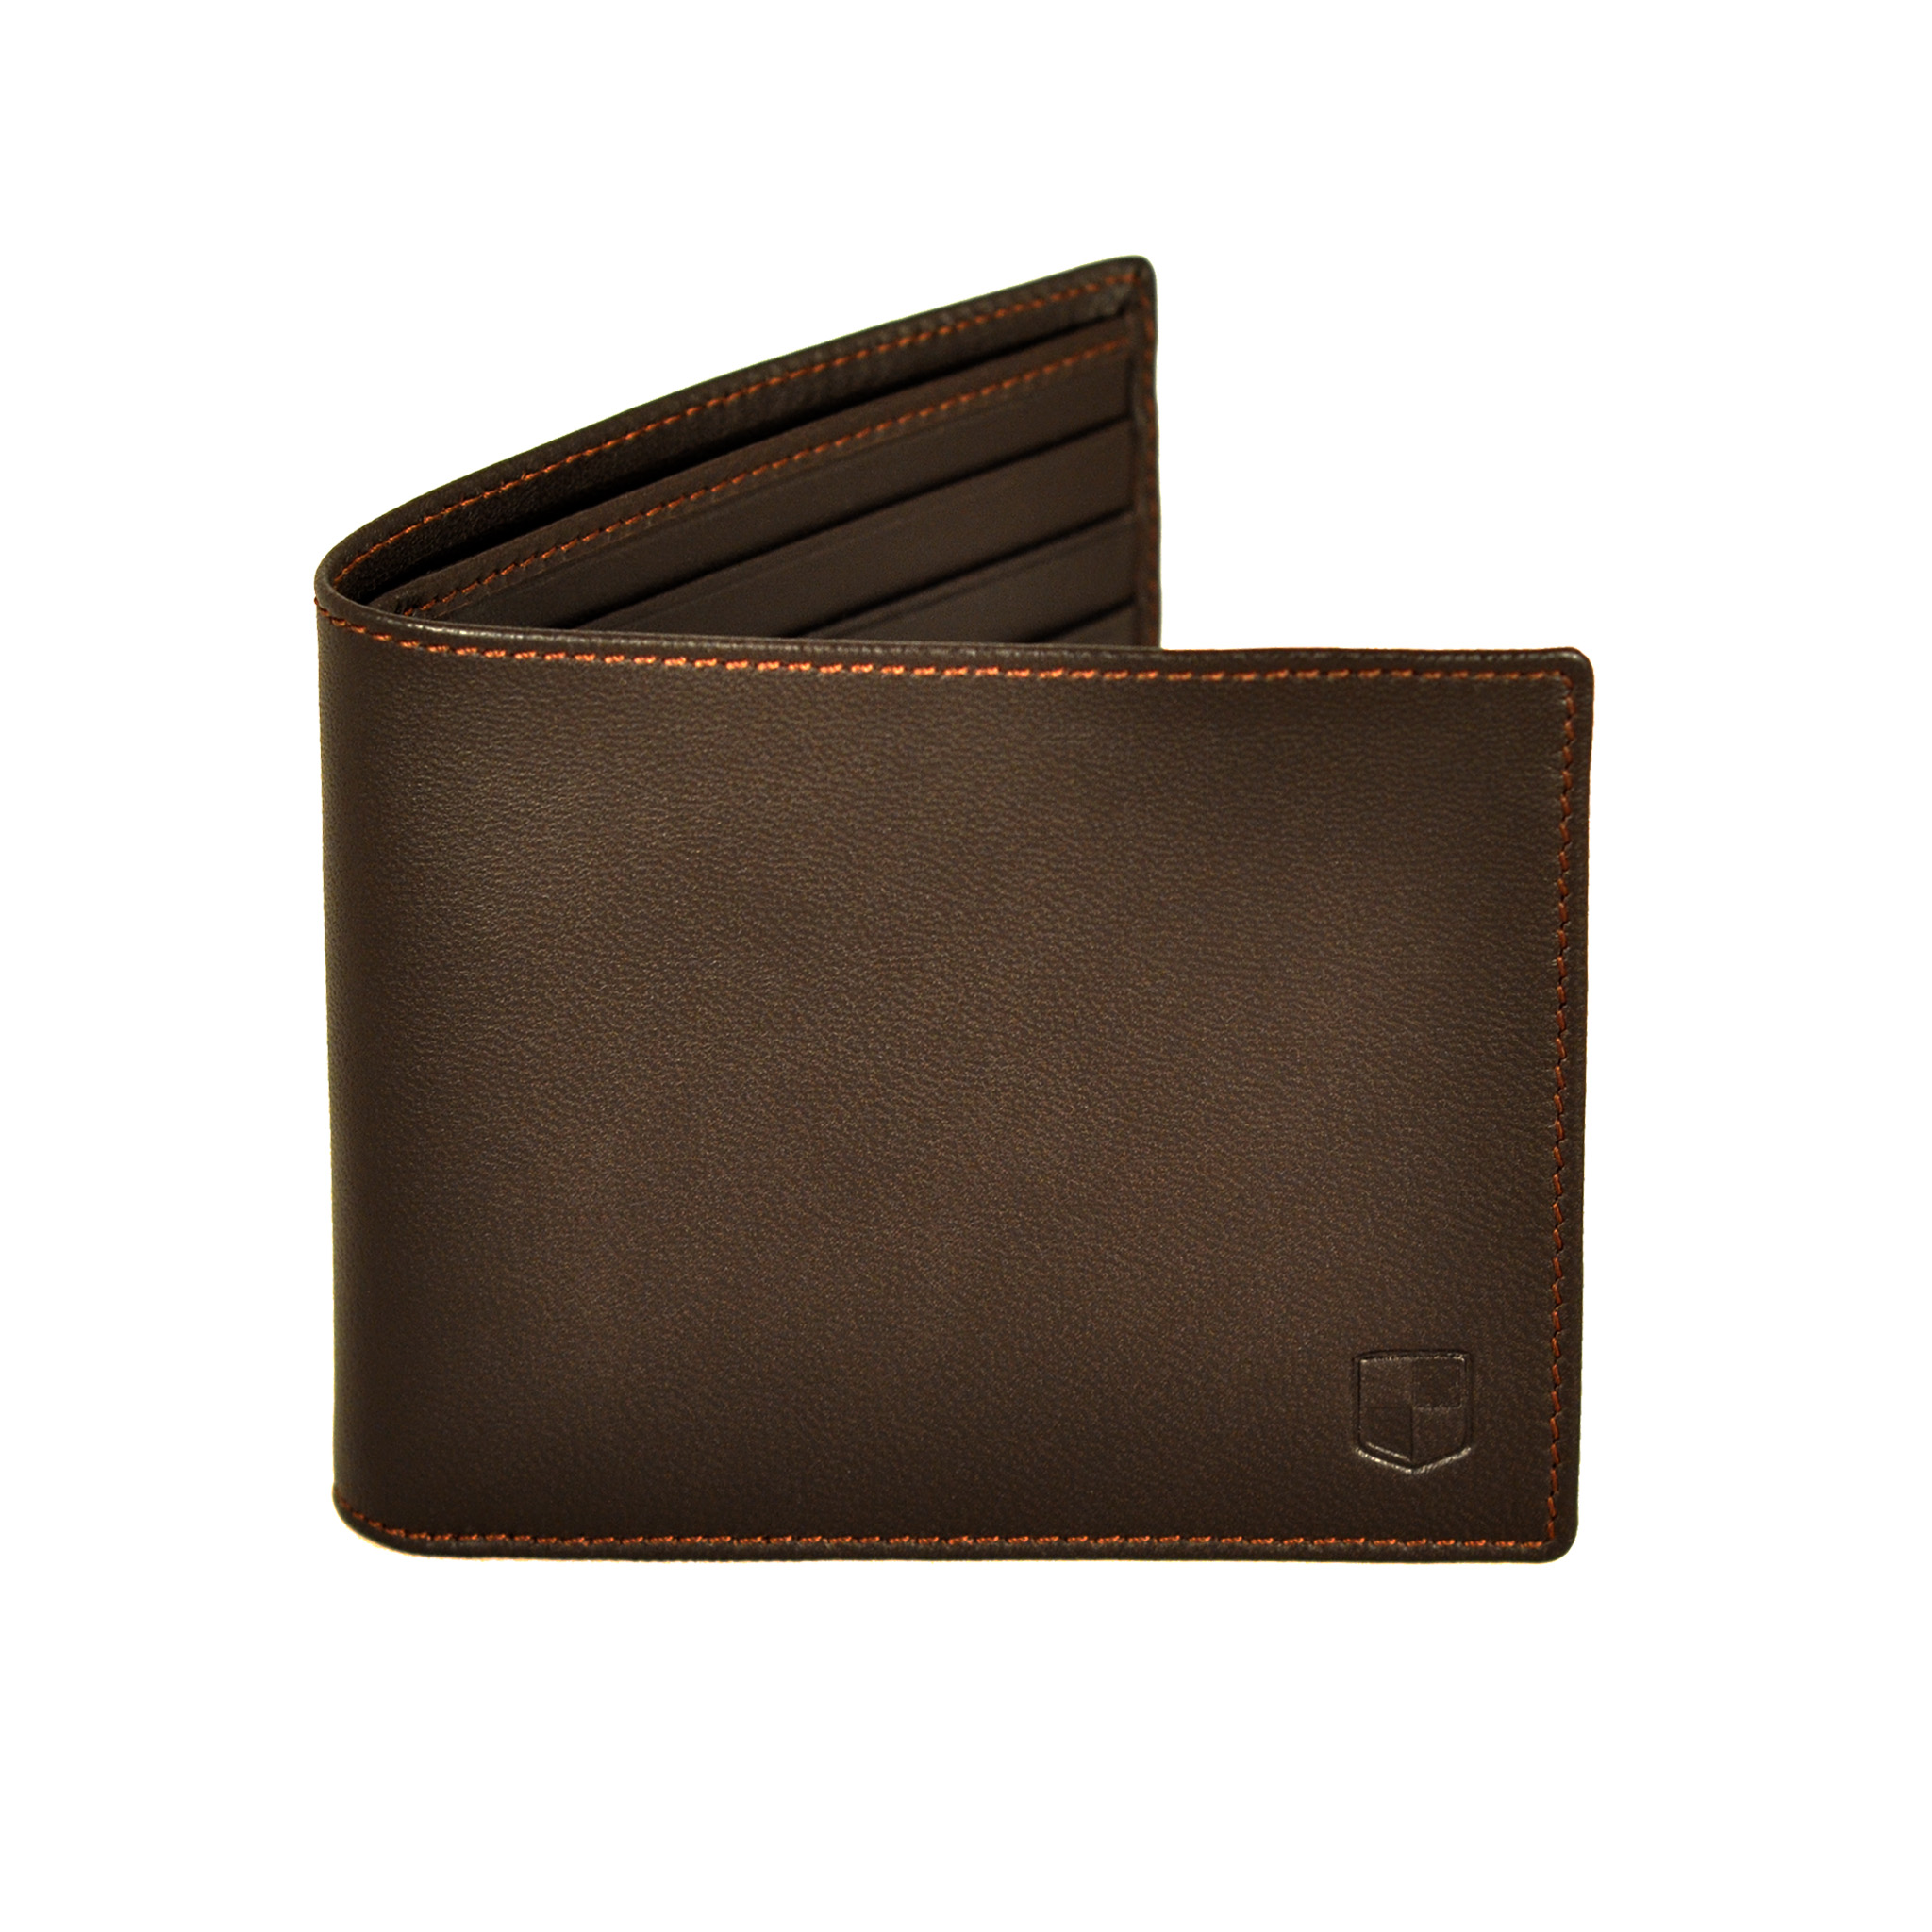 Brown lambskin billfold wallet